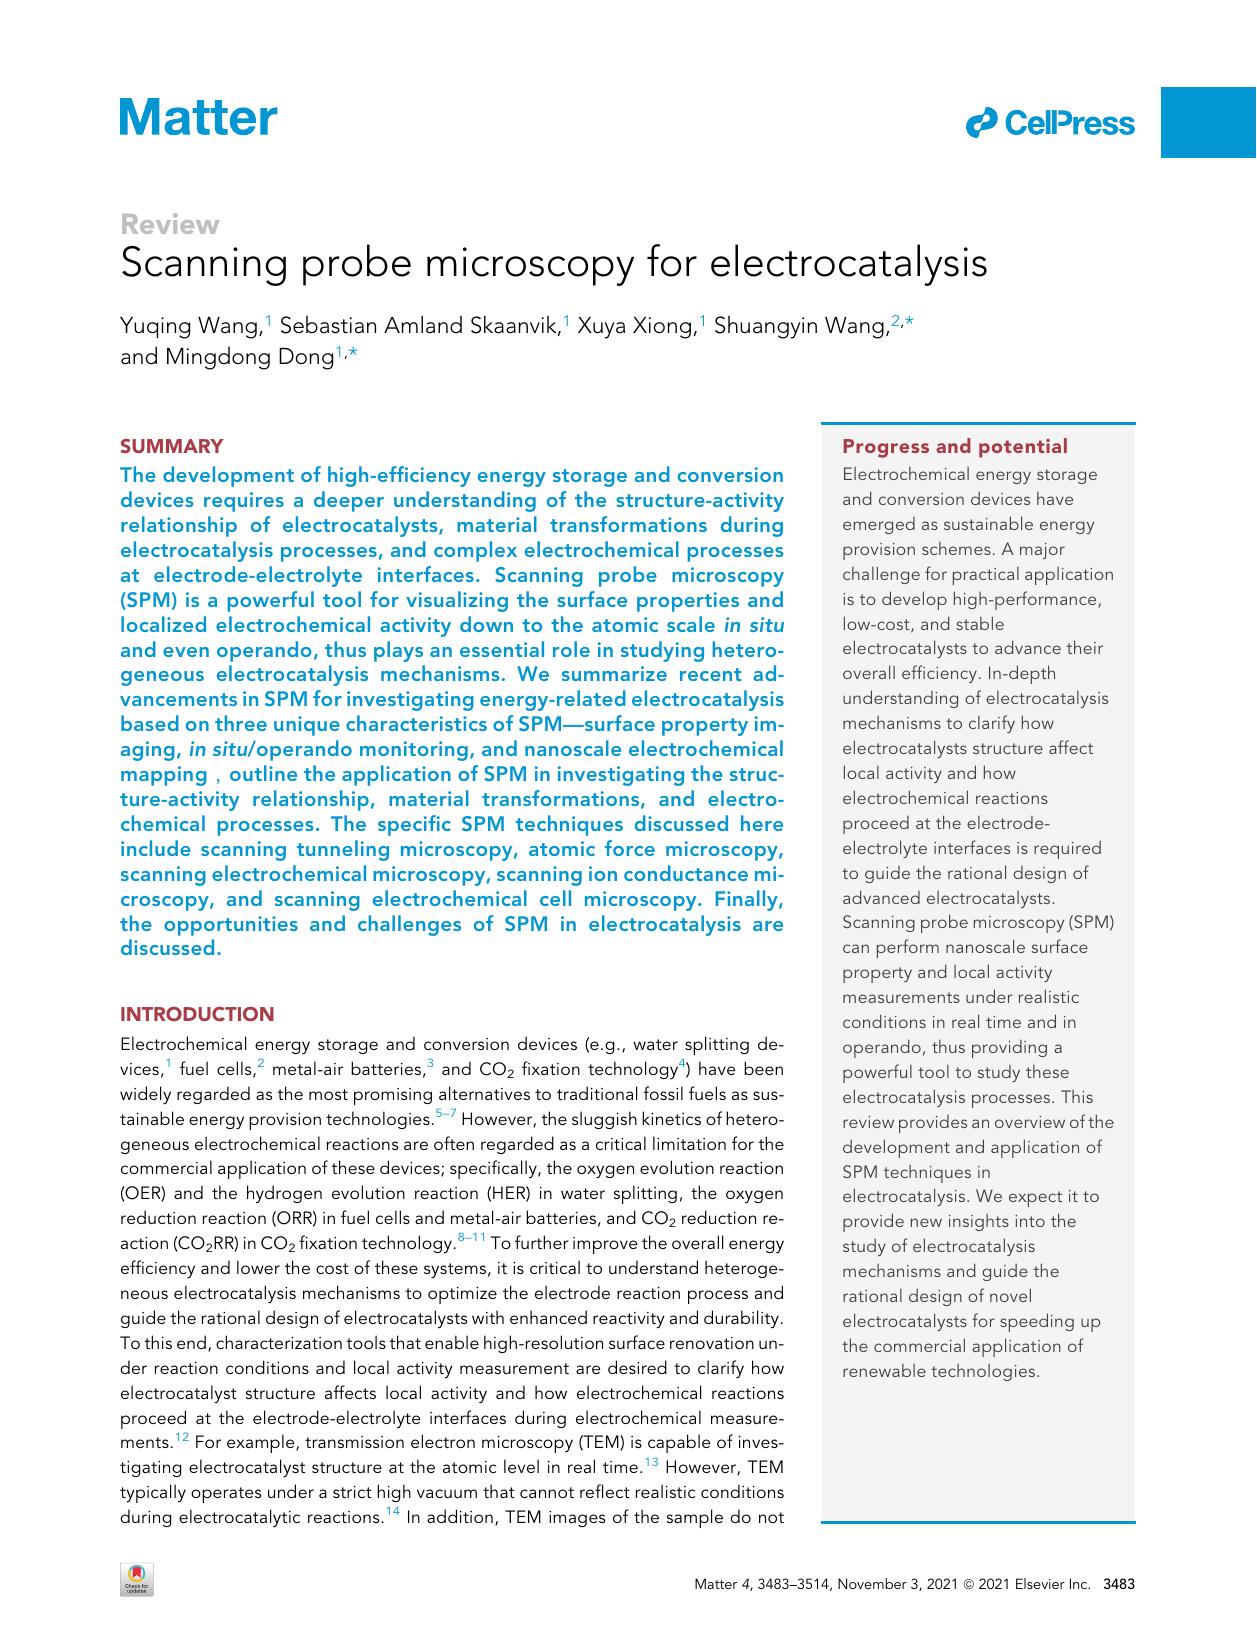 Scanning probe microscopy for electrocatalysis by Yuqing Wang & Sebastian Amland Skaanvik & Xuya Xiong & Shuangyin Wang & Mingdong Dong